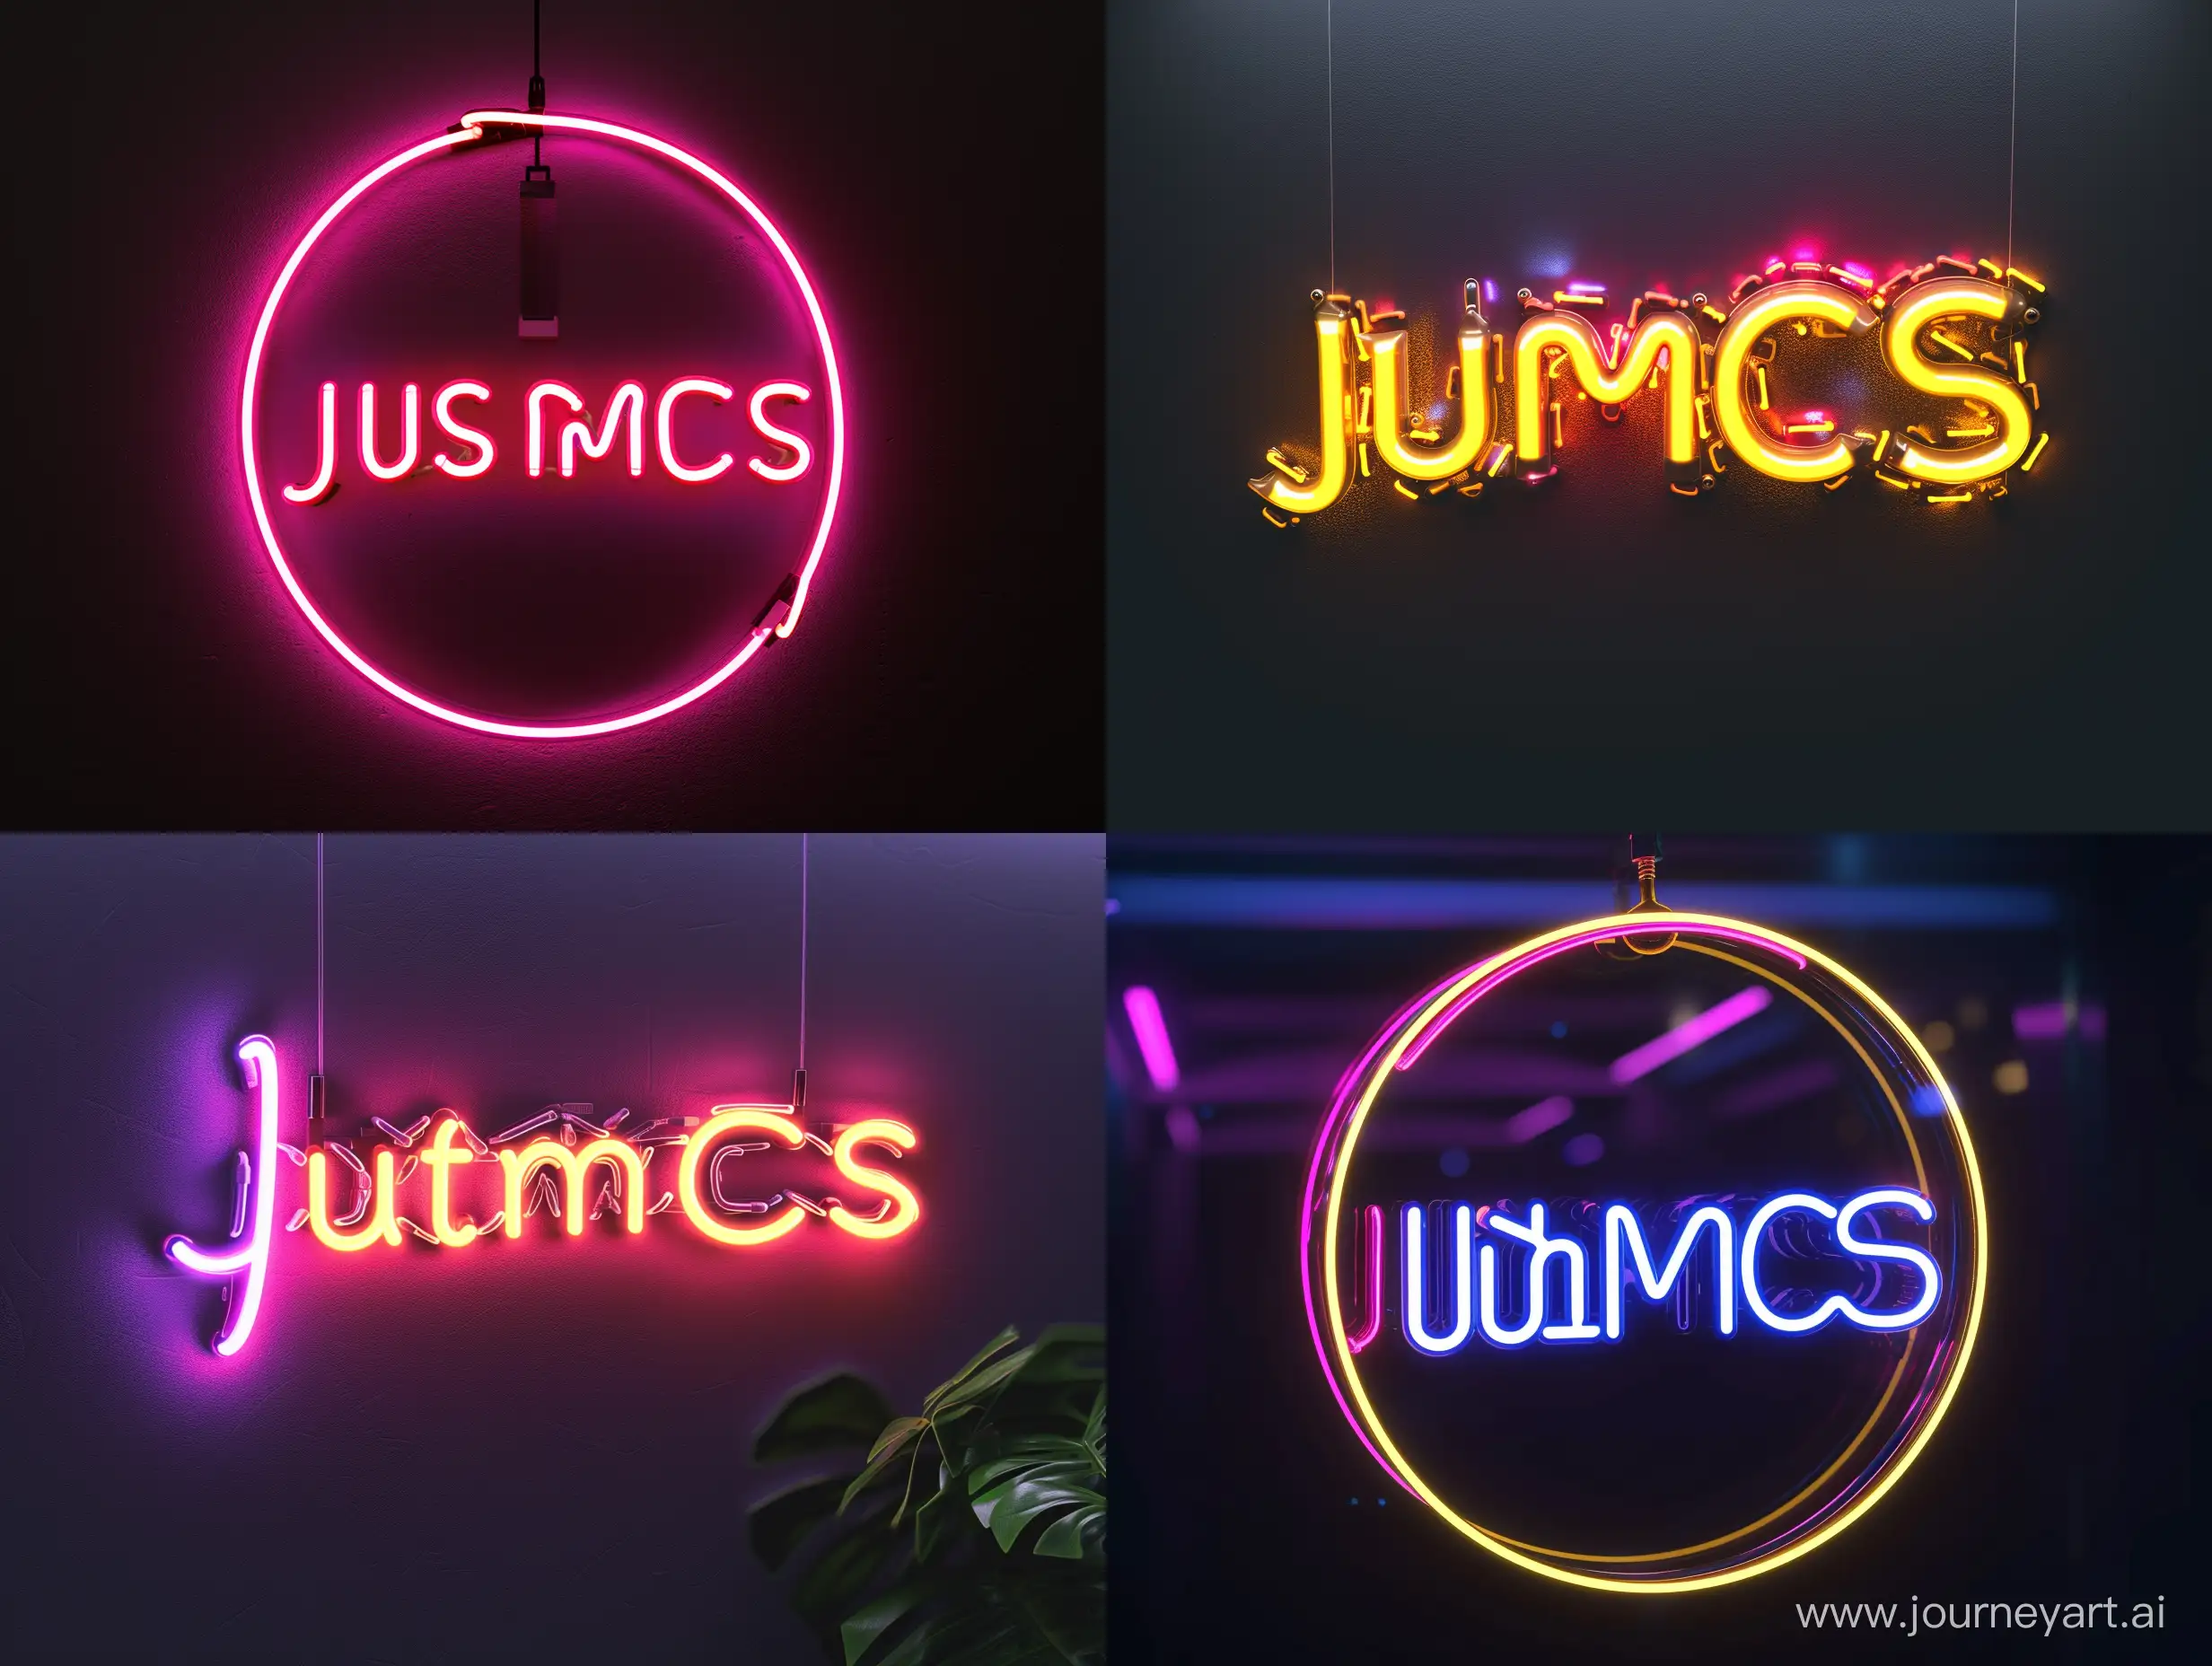 JustMCS logo neon
